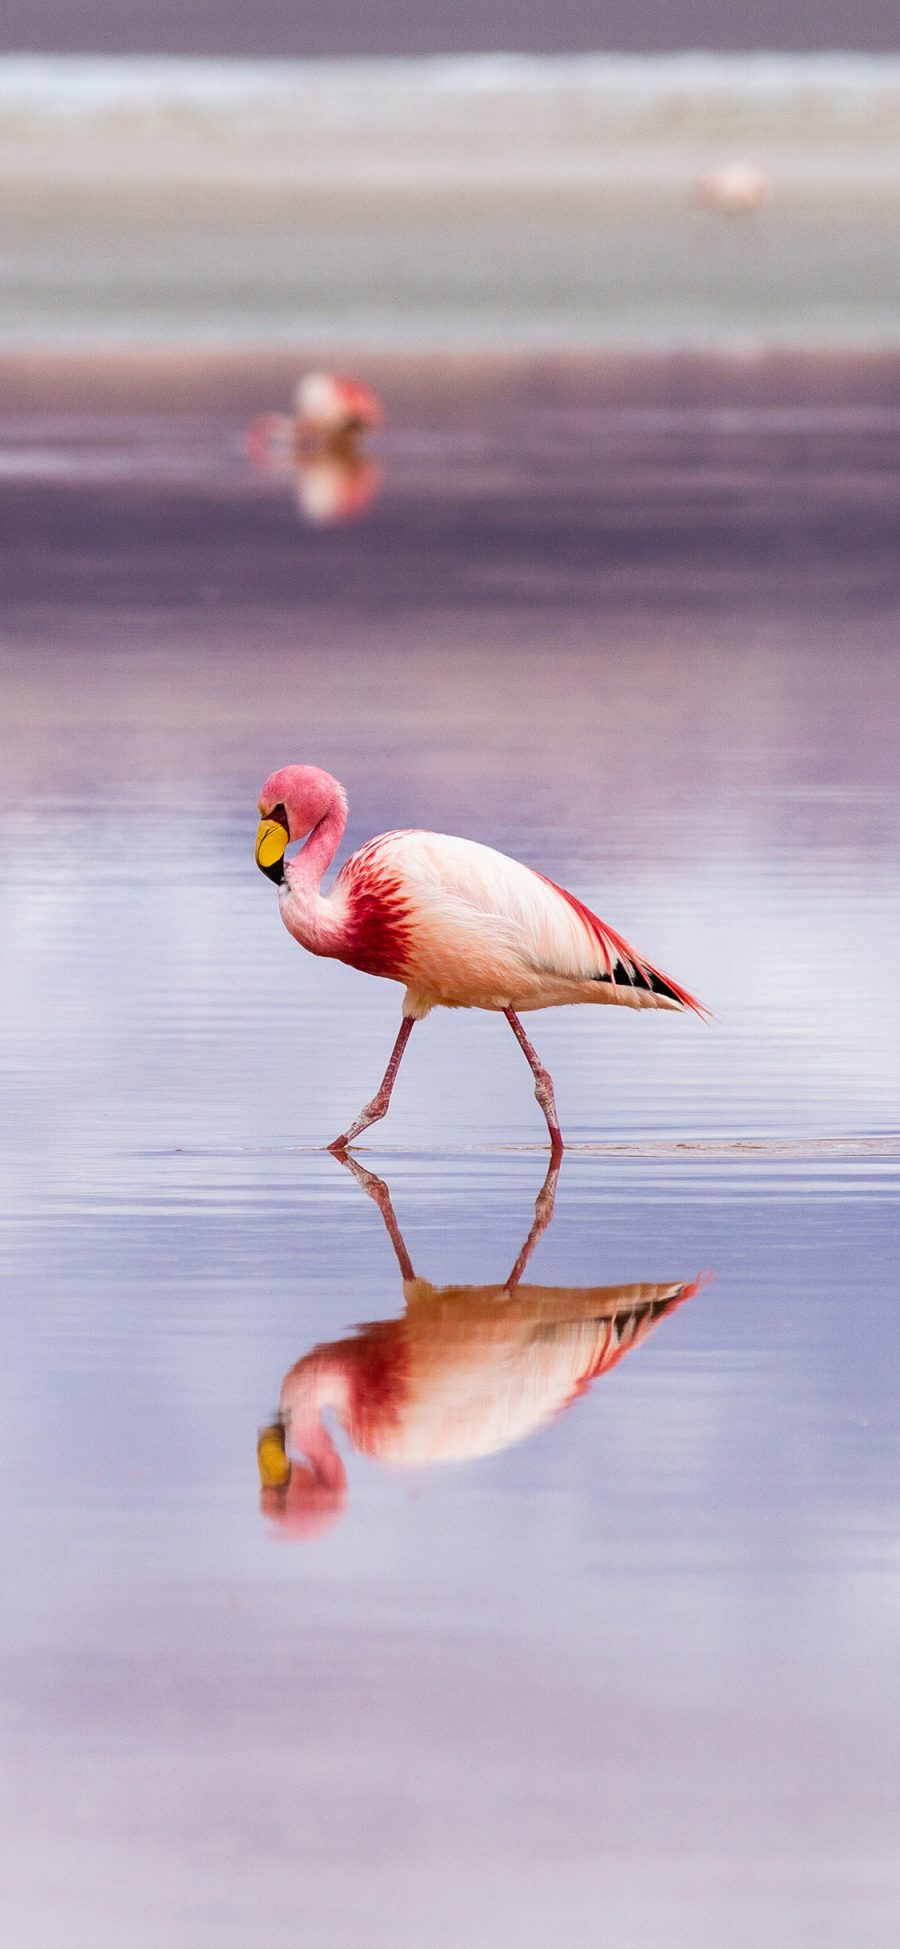 [2436×1125]湖泊 候鸟 火烈鸟 粉色羽毛 苹果手机壁纸图片